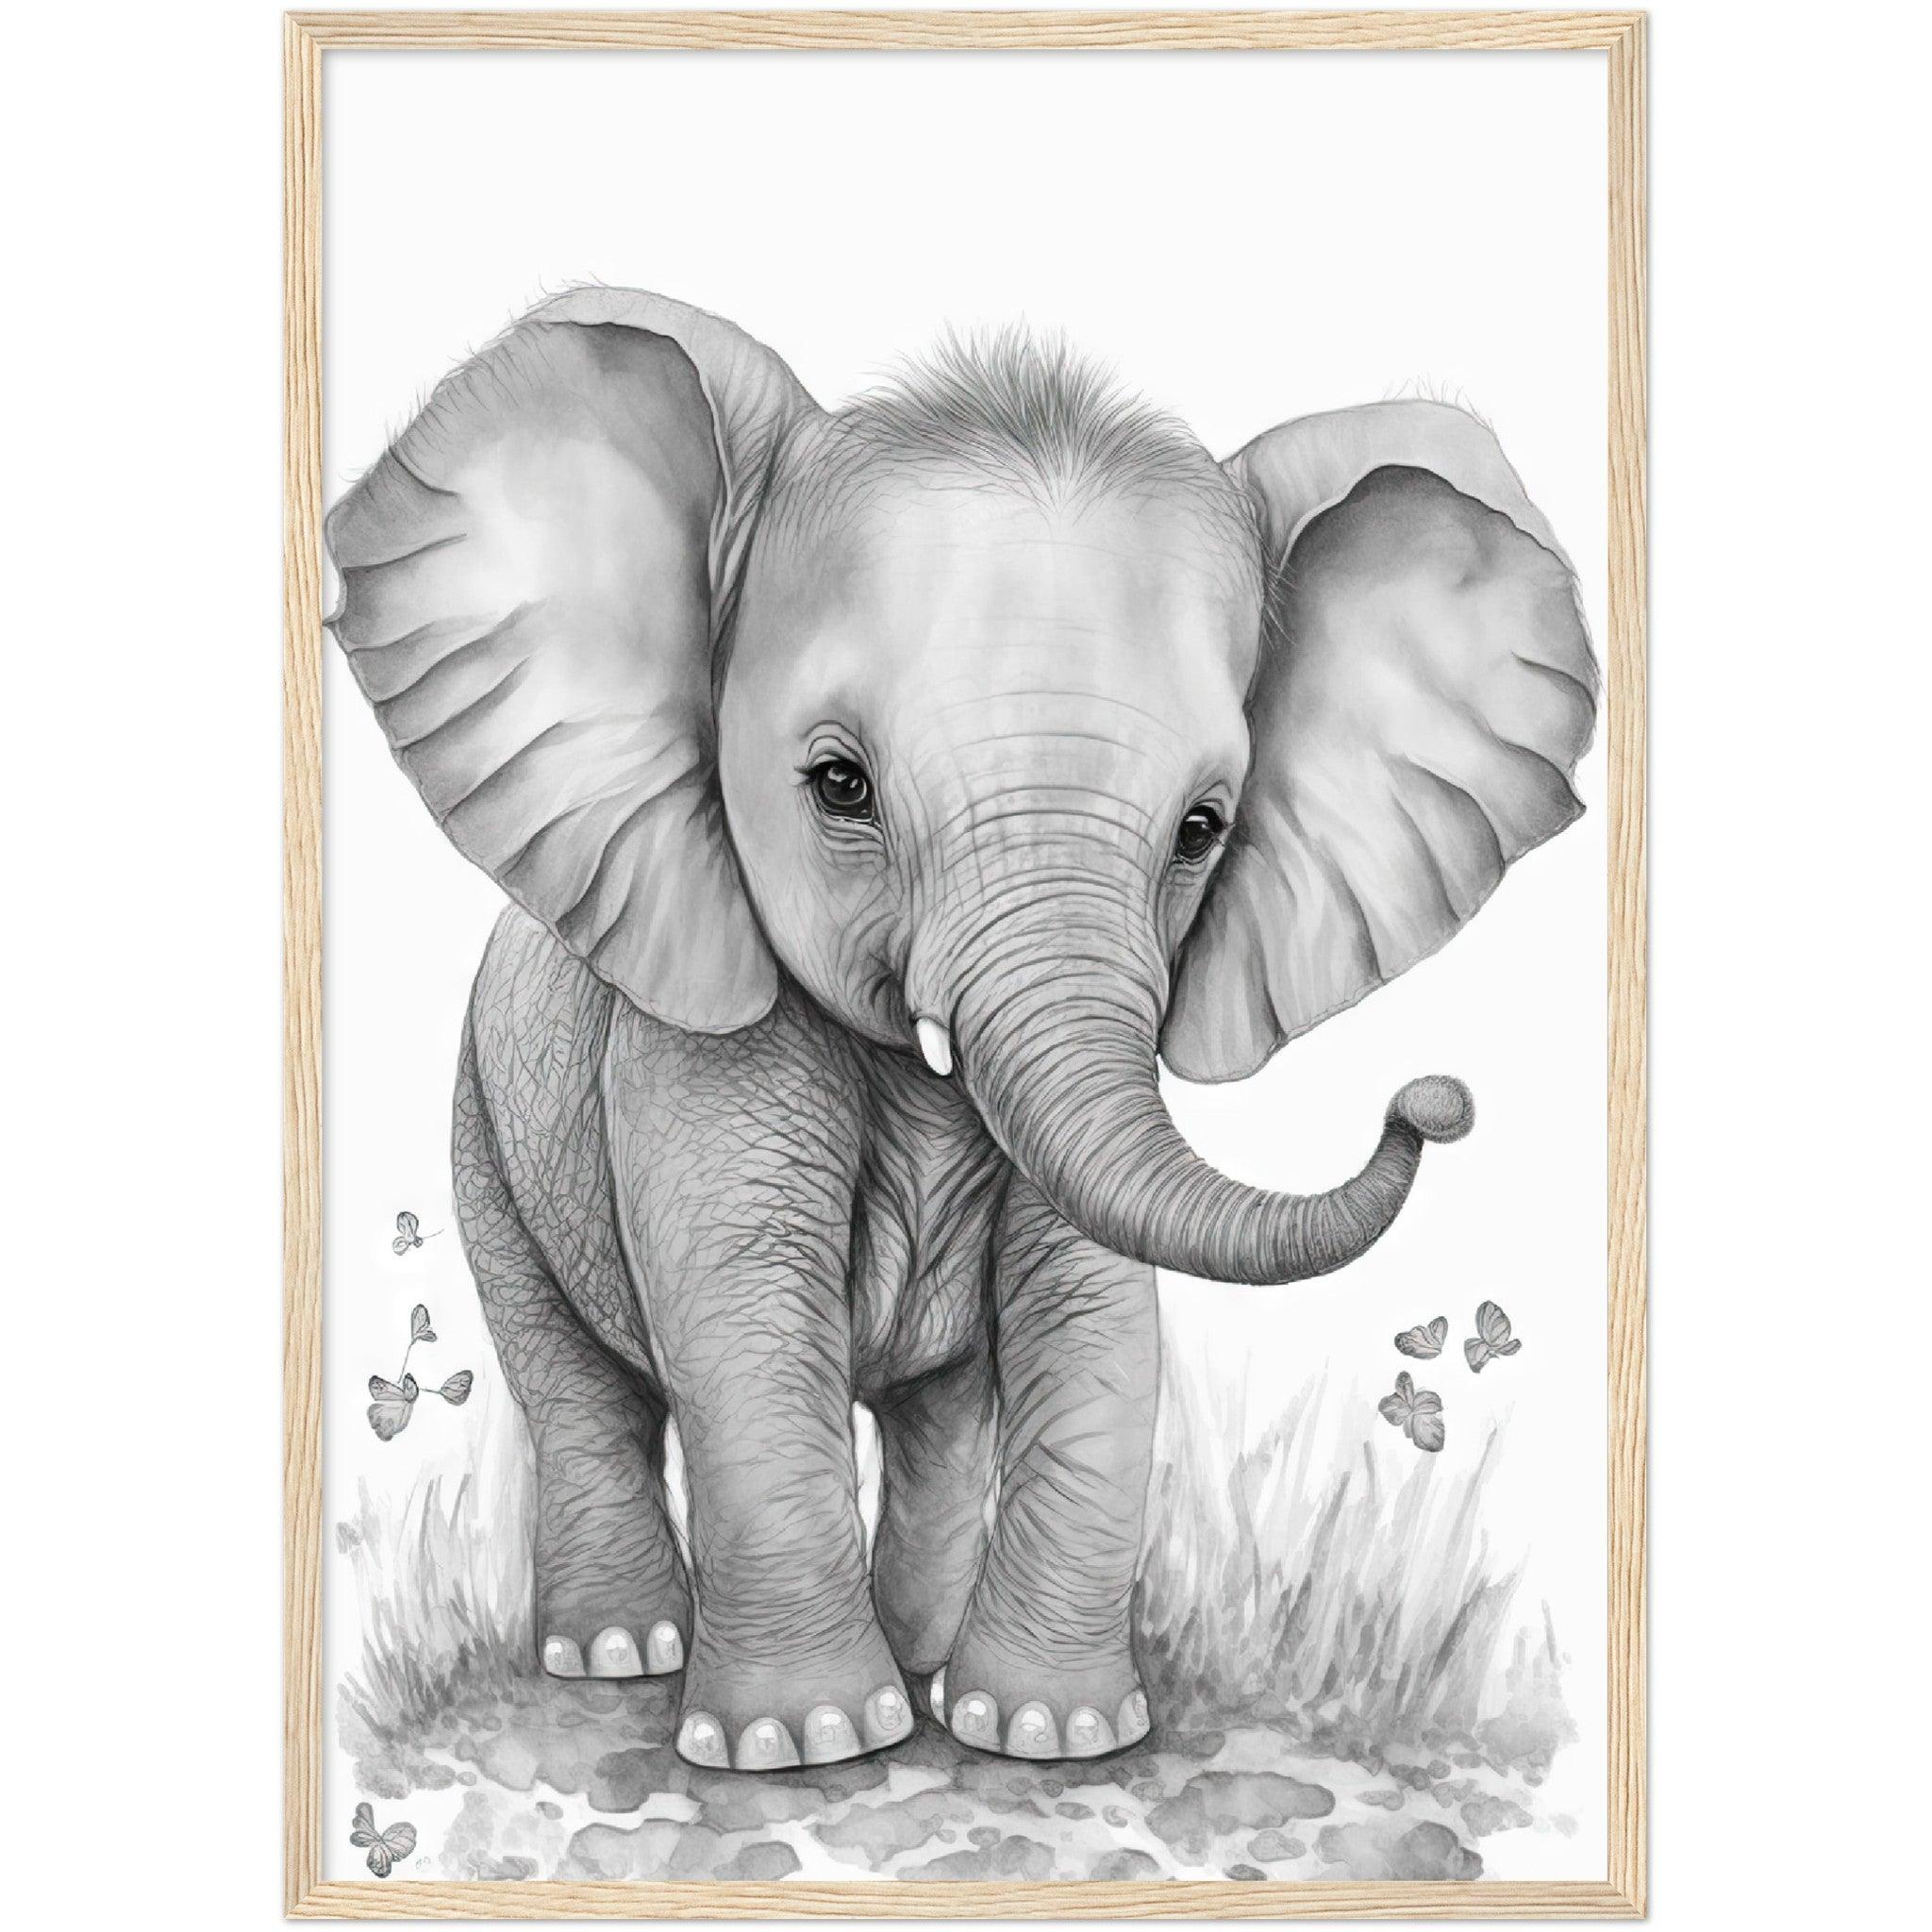 www.fineaiart.art - - Cute Baby Elephant - (8) by Fineaiart on DeviantArt